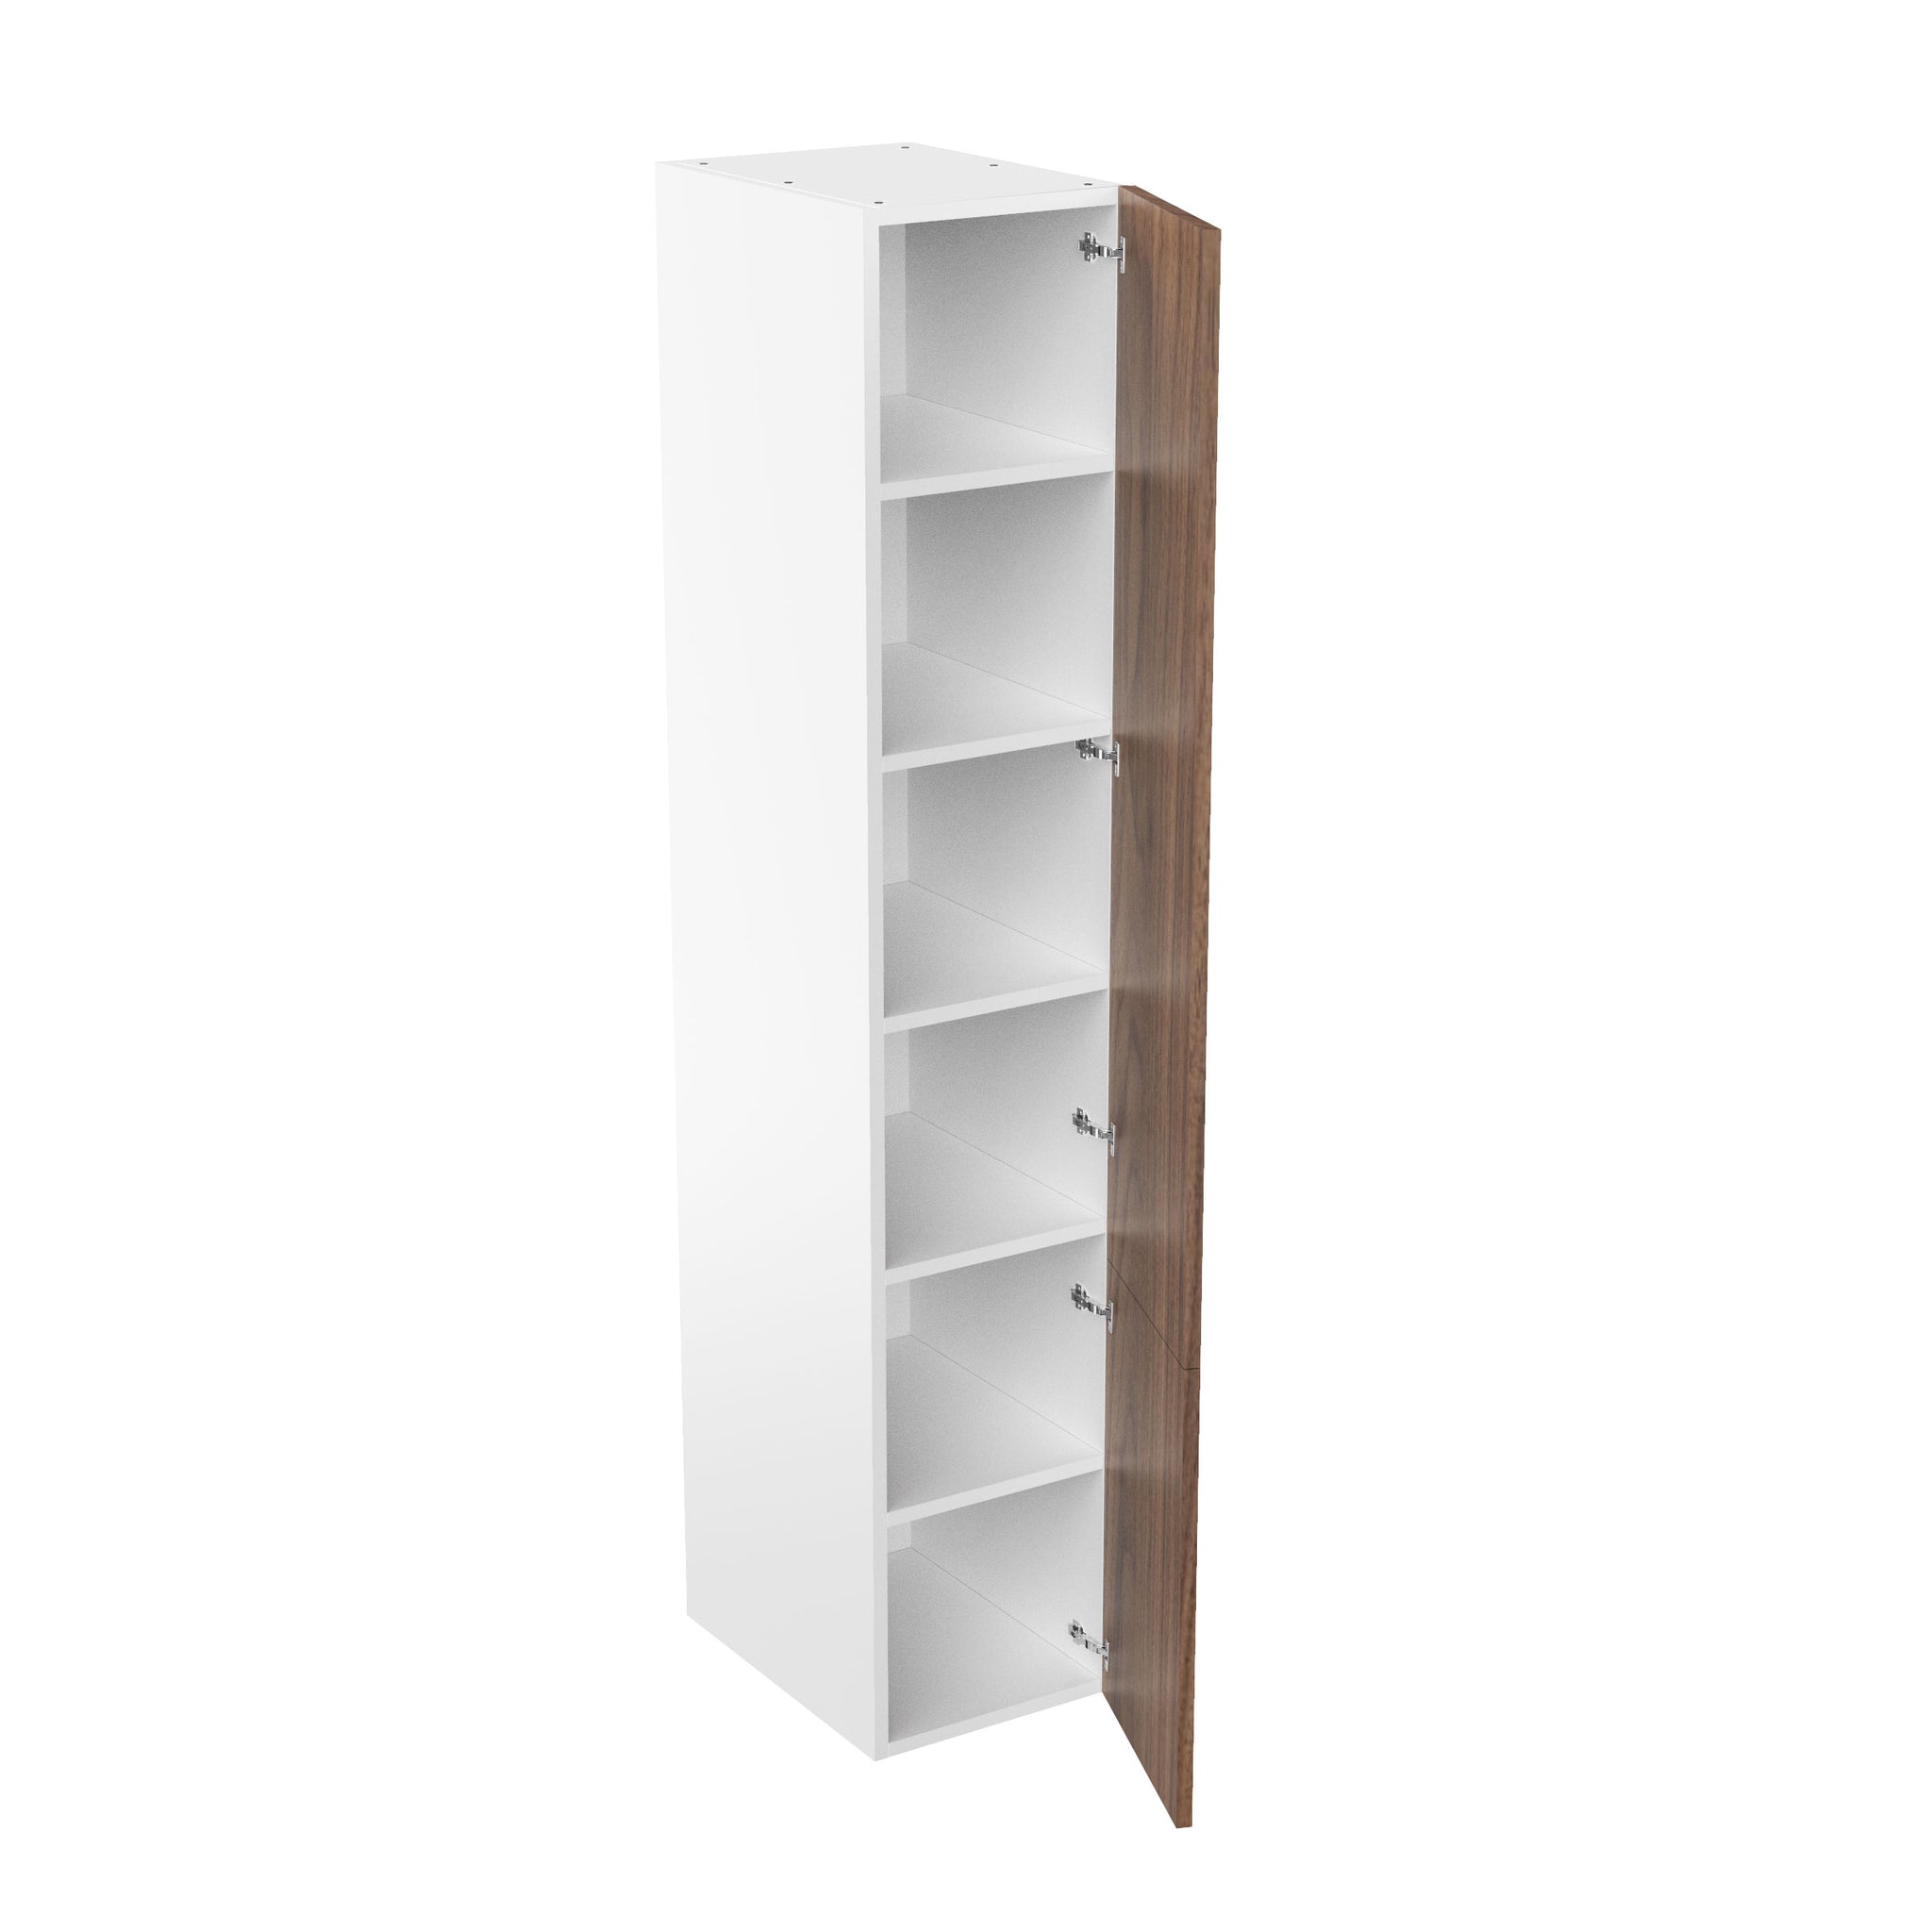 RTA Walnut Cabinet - Single Door Tall Cabinets | 18"W x 96"H x 24"D